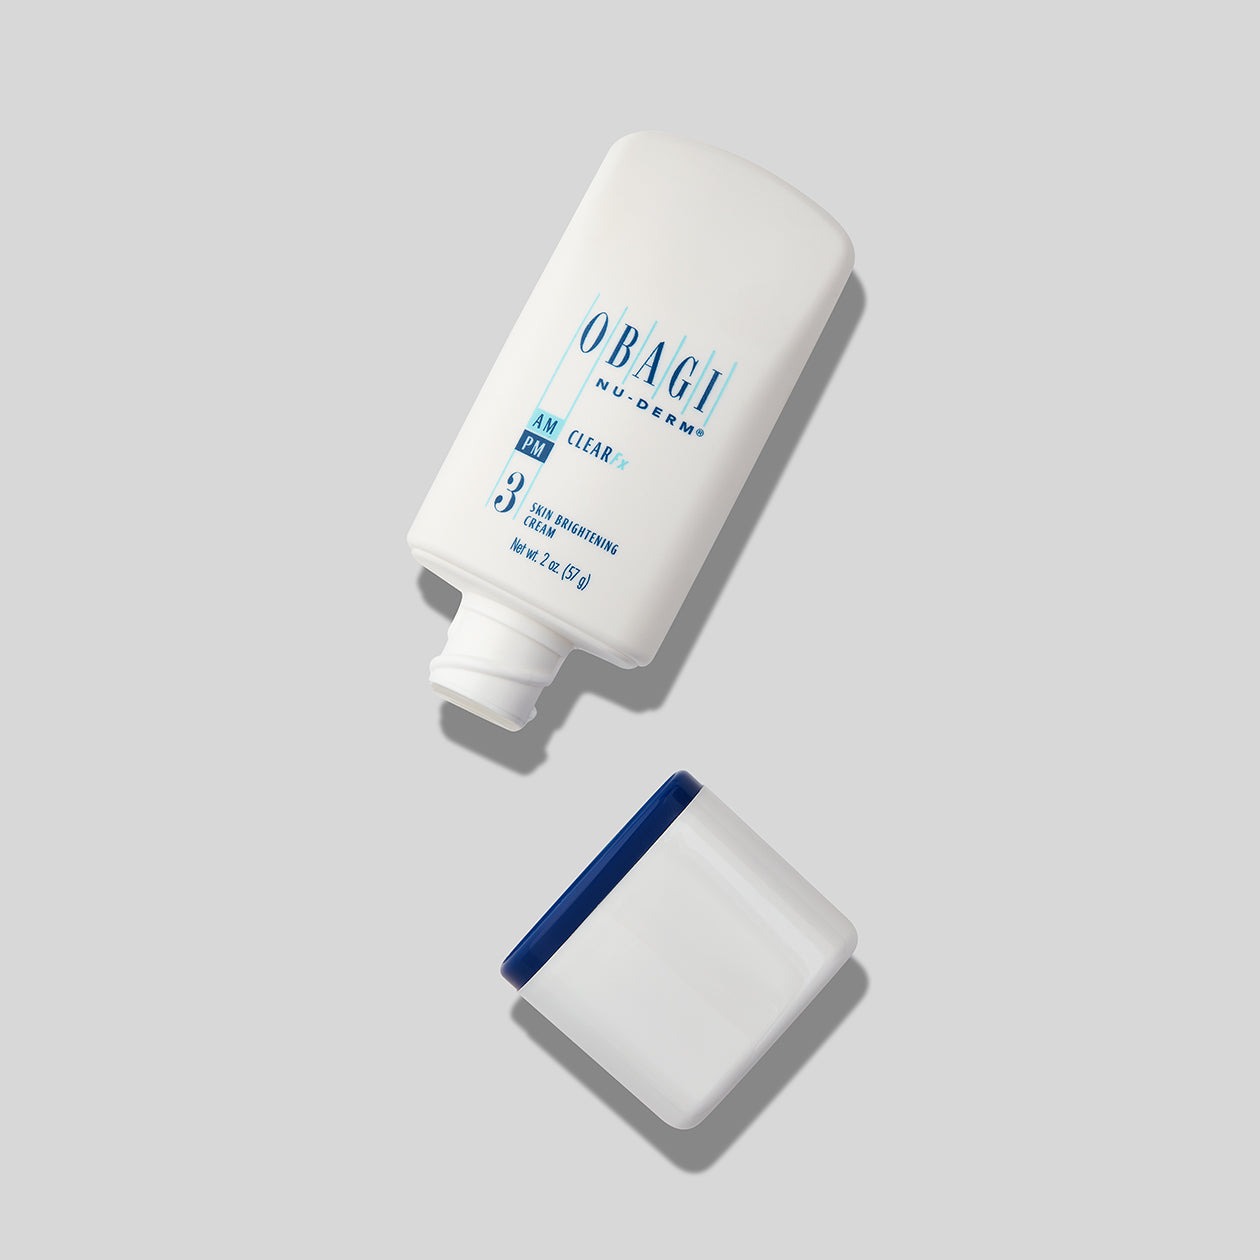 Obagi Nu-Derm Fx Clear Fx Skin Brightening Cream-1